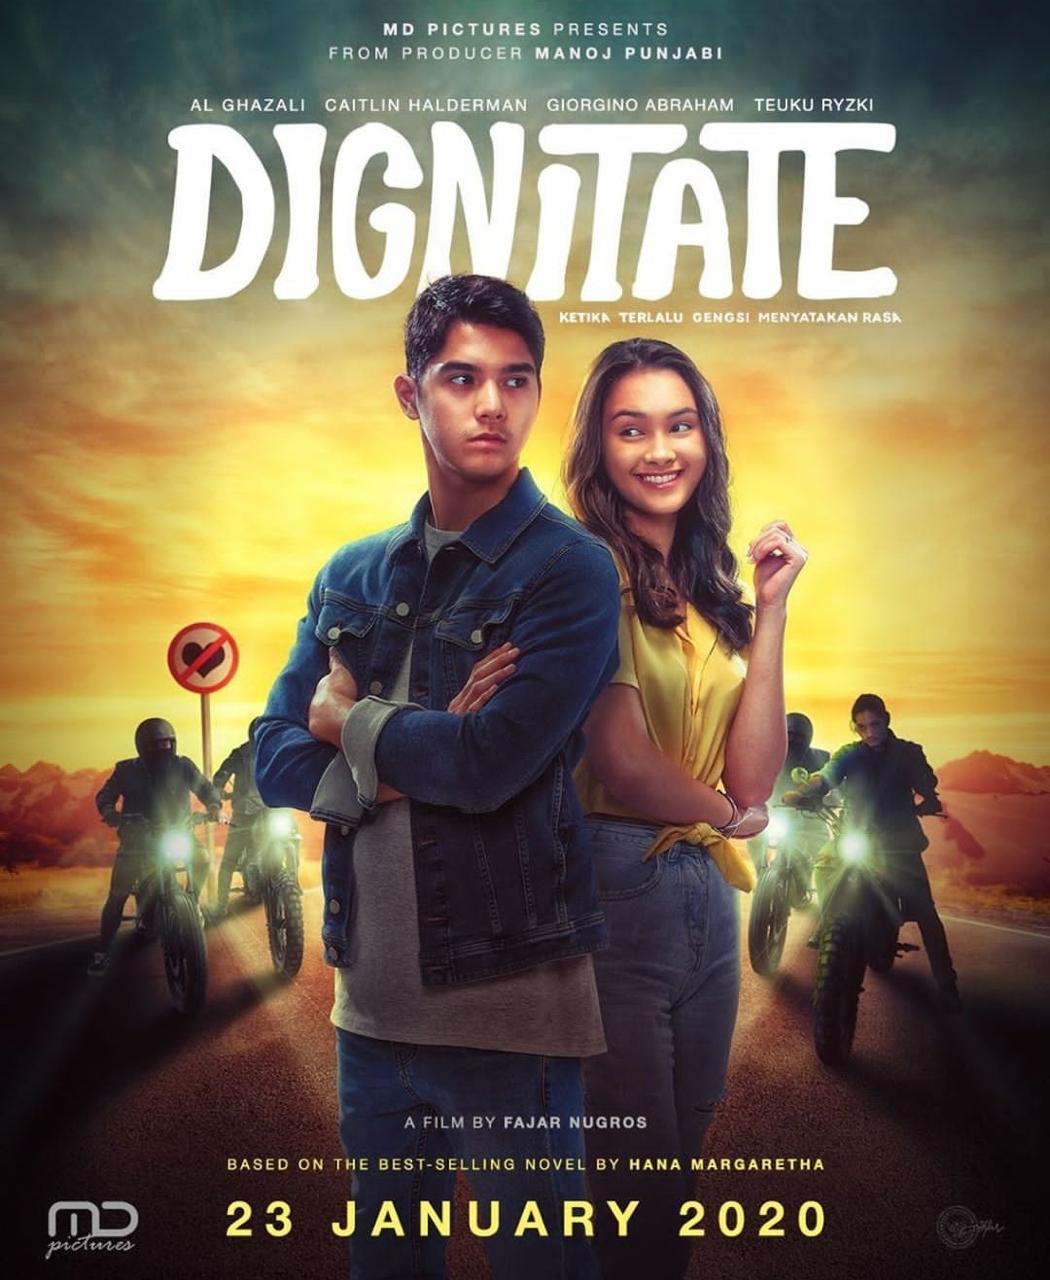 Dignitate: Drama remaja yang terlihat manis tetapi cukup kompleks